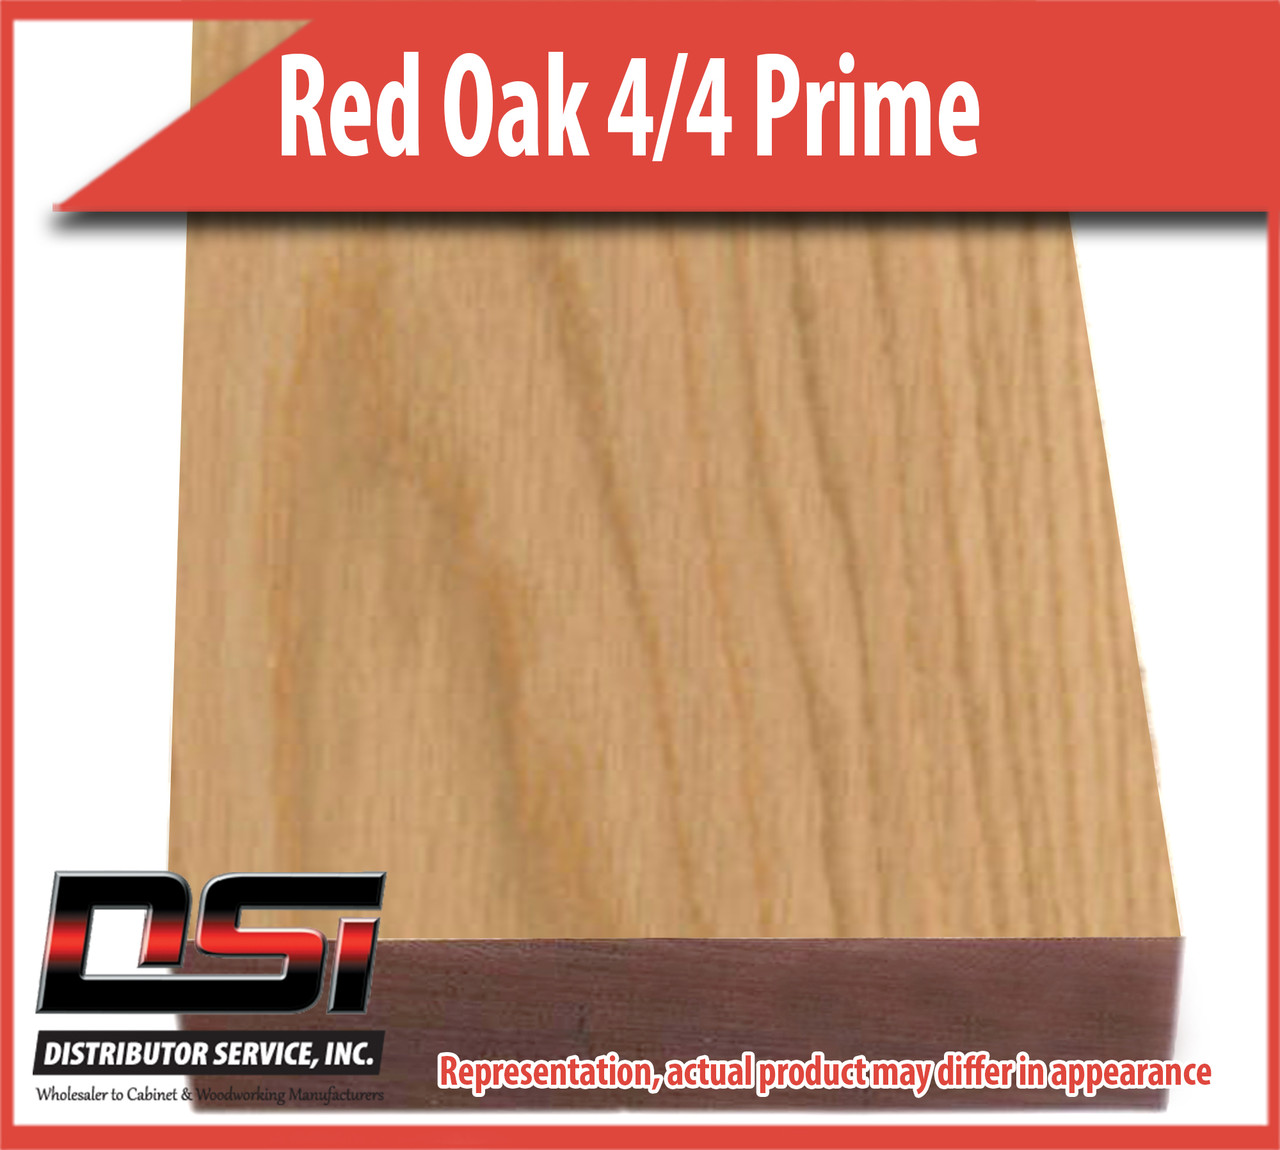 Domestic Hardwood Lumber Red Oak 4/4 Prime 13/16" S2S 9'-10'SLR1E